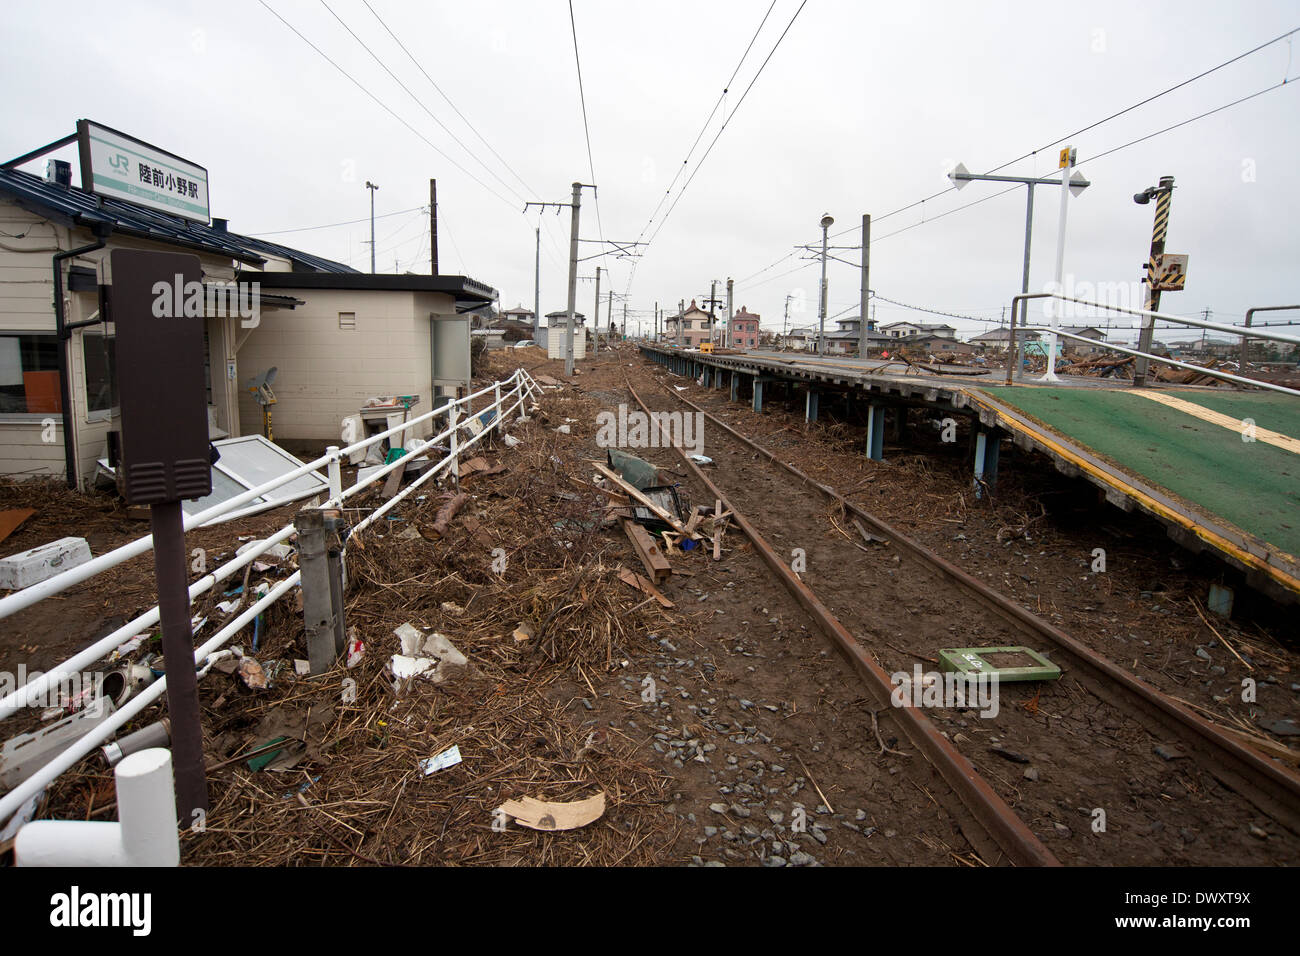 Stazione Rikuzen-Ono danneggiato dal Tsunami, Miyagi, Giappone Foto Stock